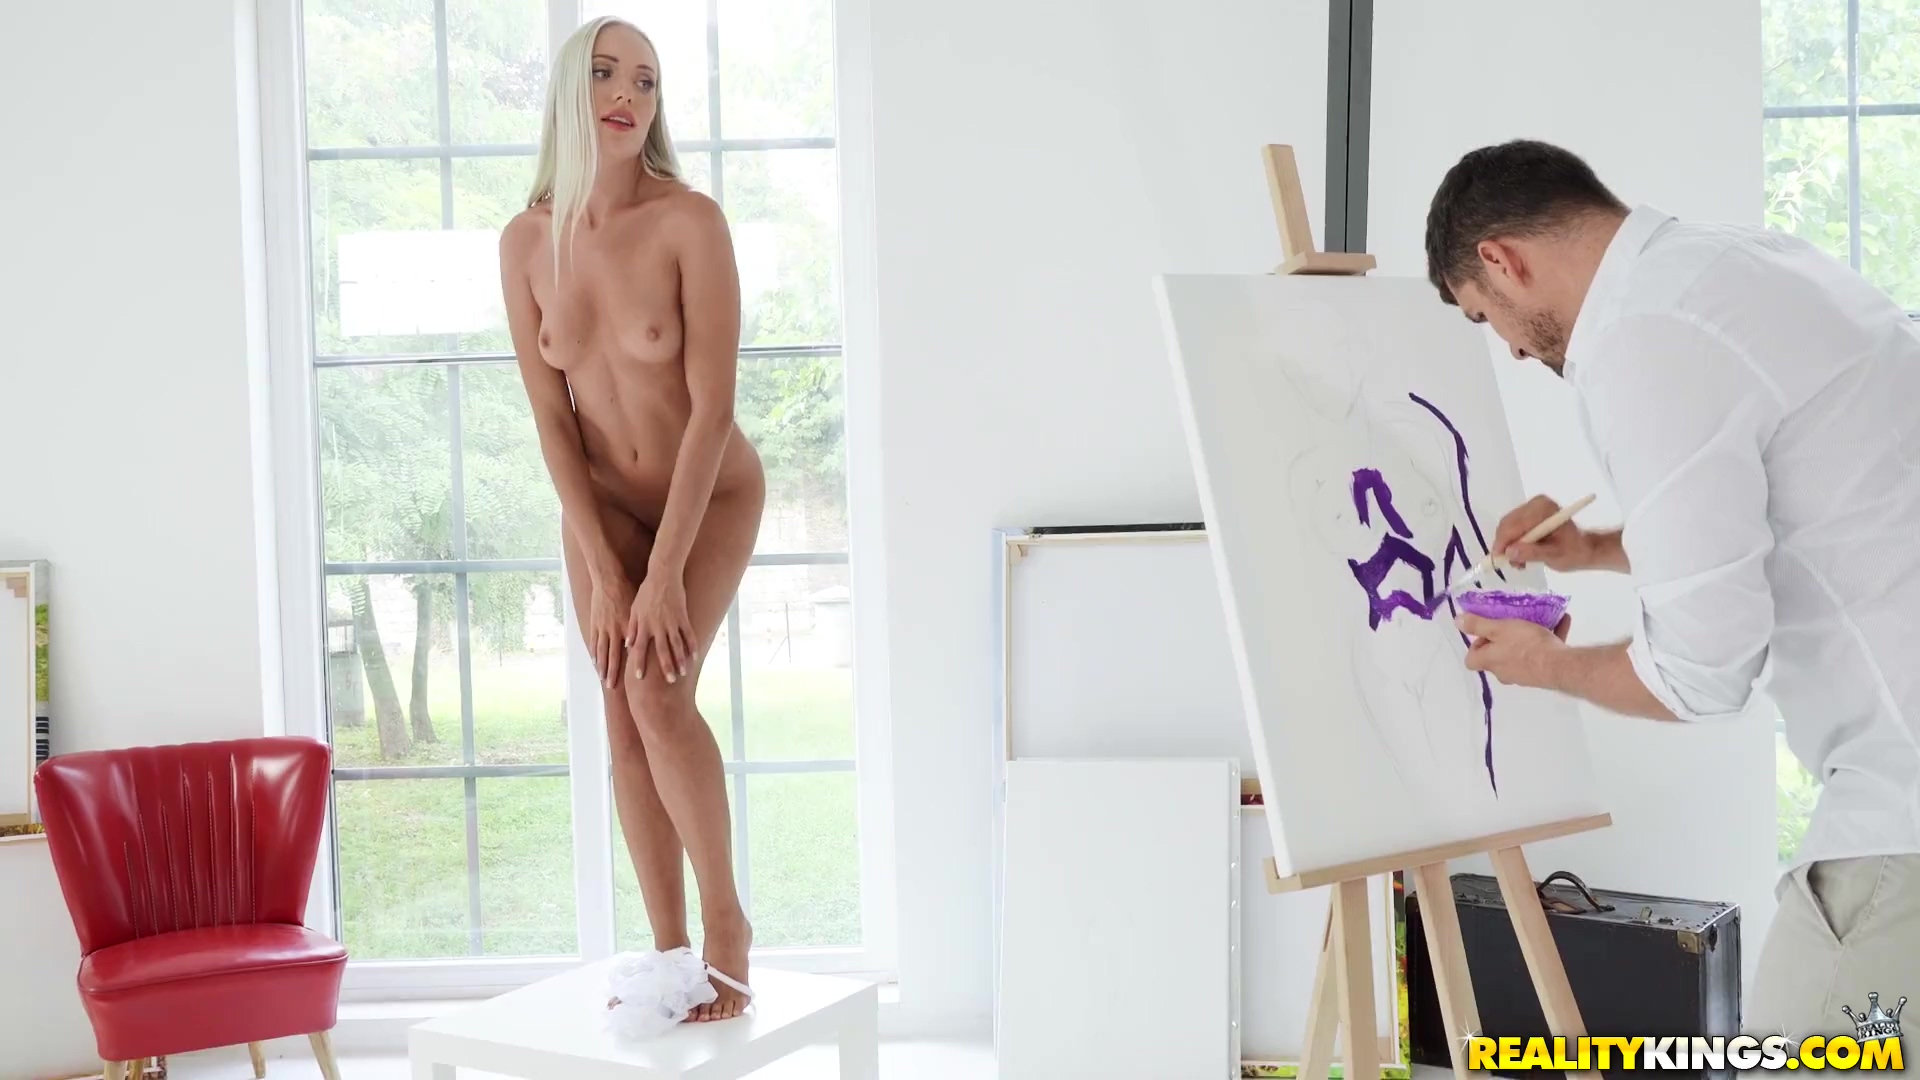 Aktmodel angelika greys verführt die Künstlerin dazu, sich mit ihr zu vergnügen statt zu malen Bild Foto